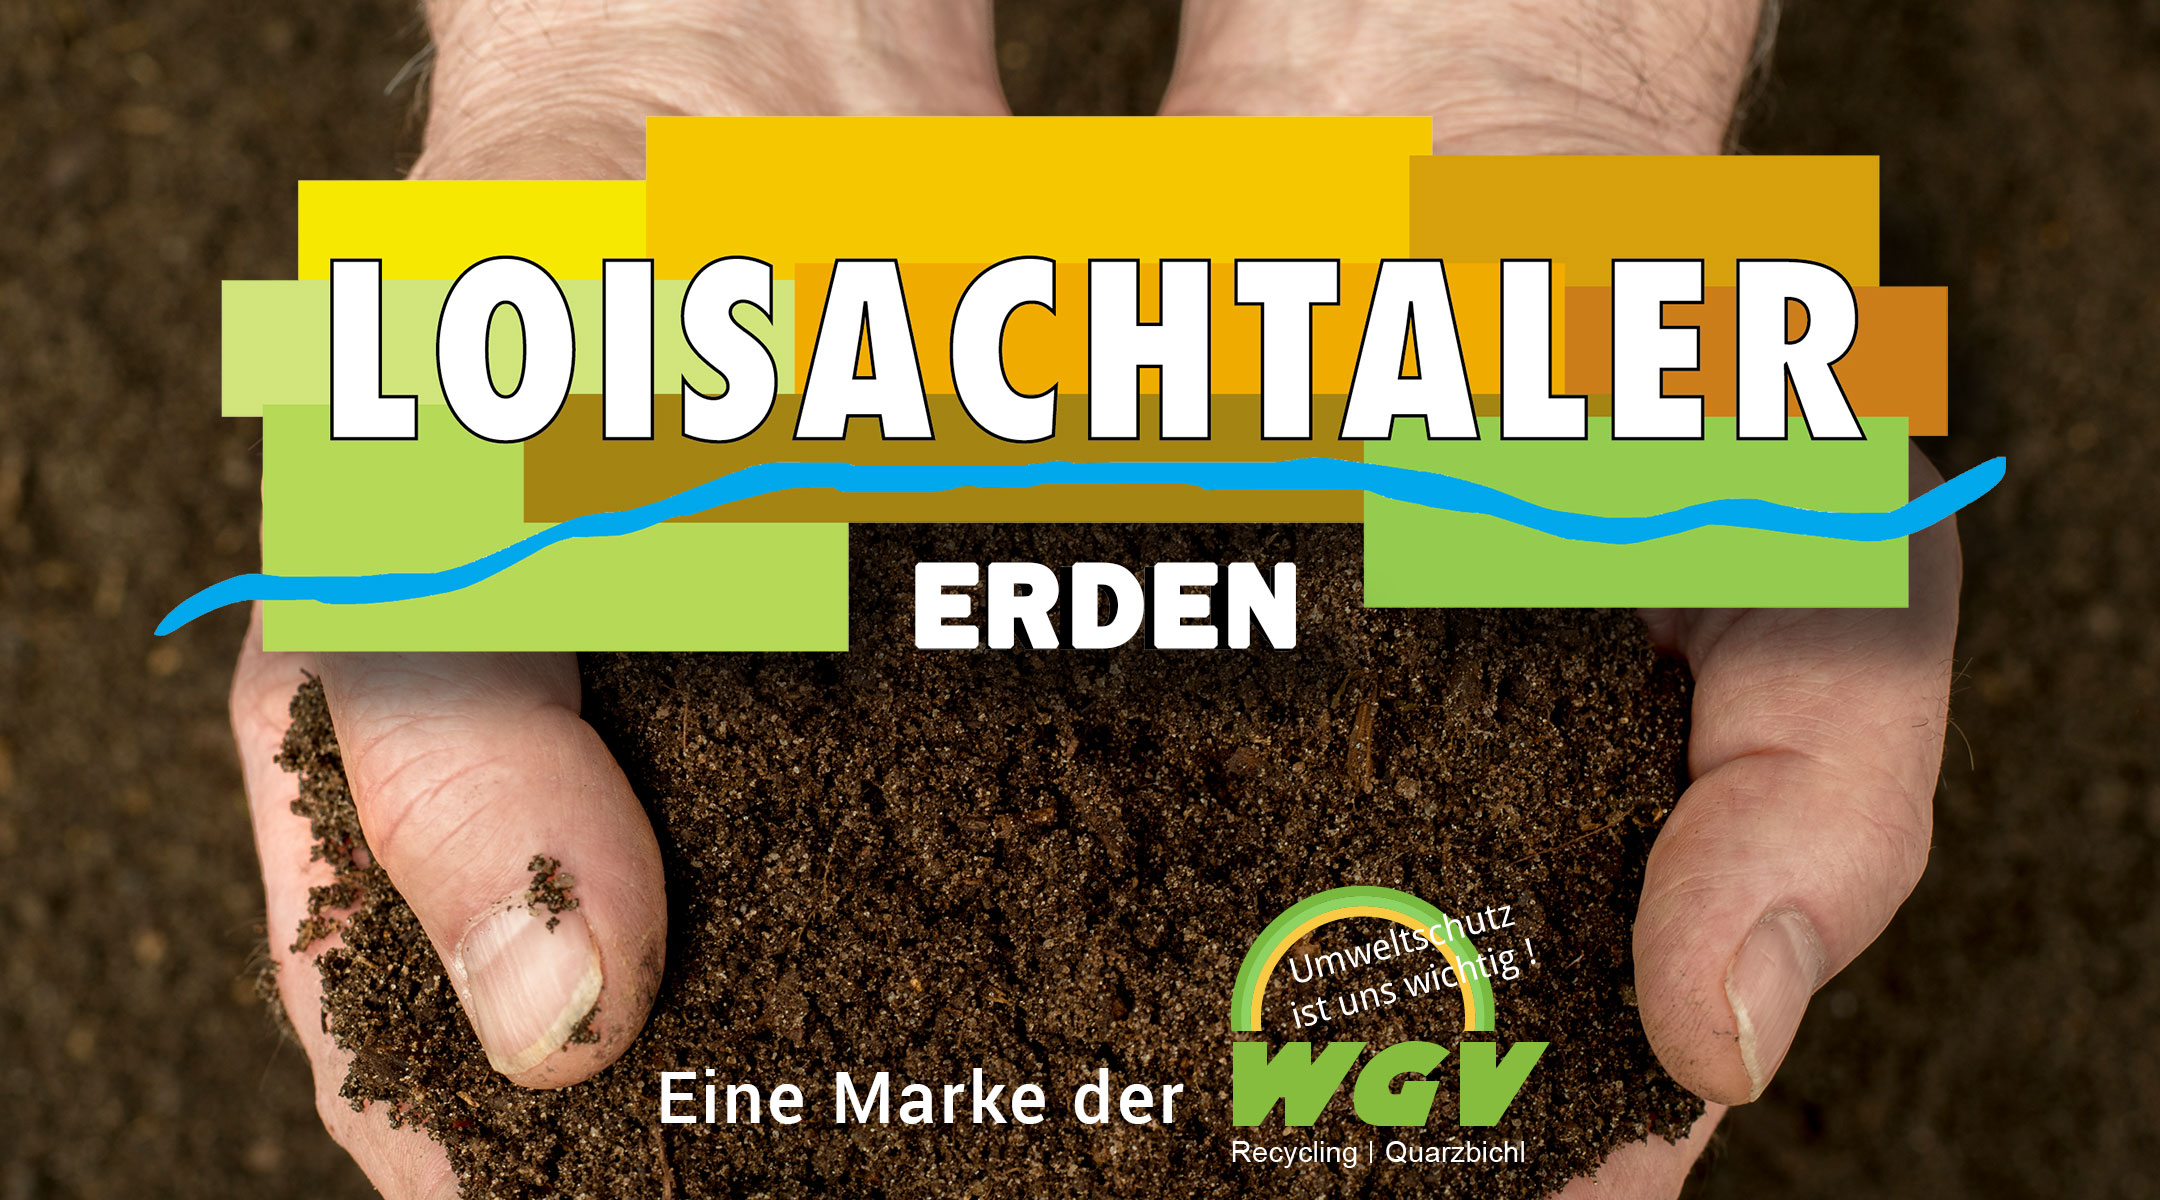 Loisachtaler Erden - Eine Marke der WGV Recycling GmbH